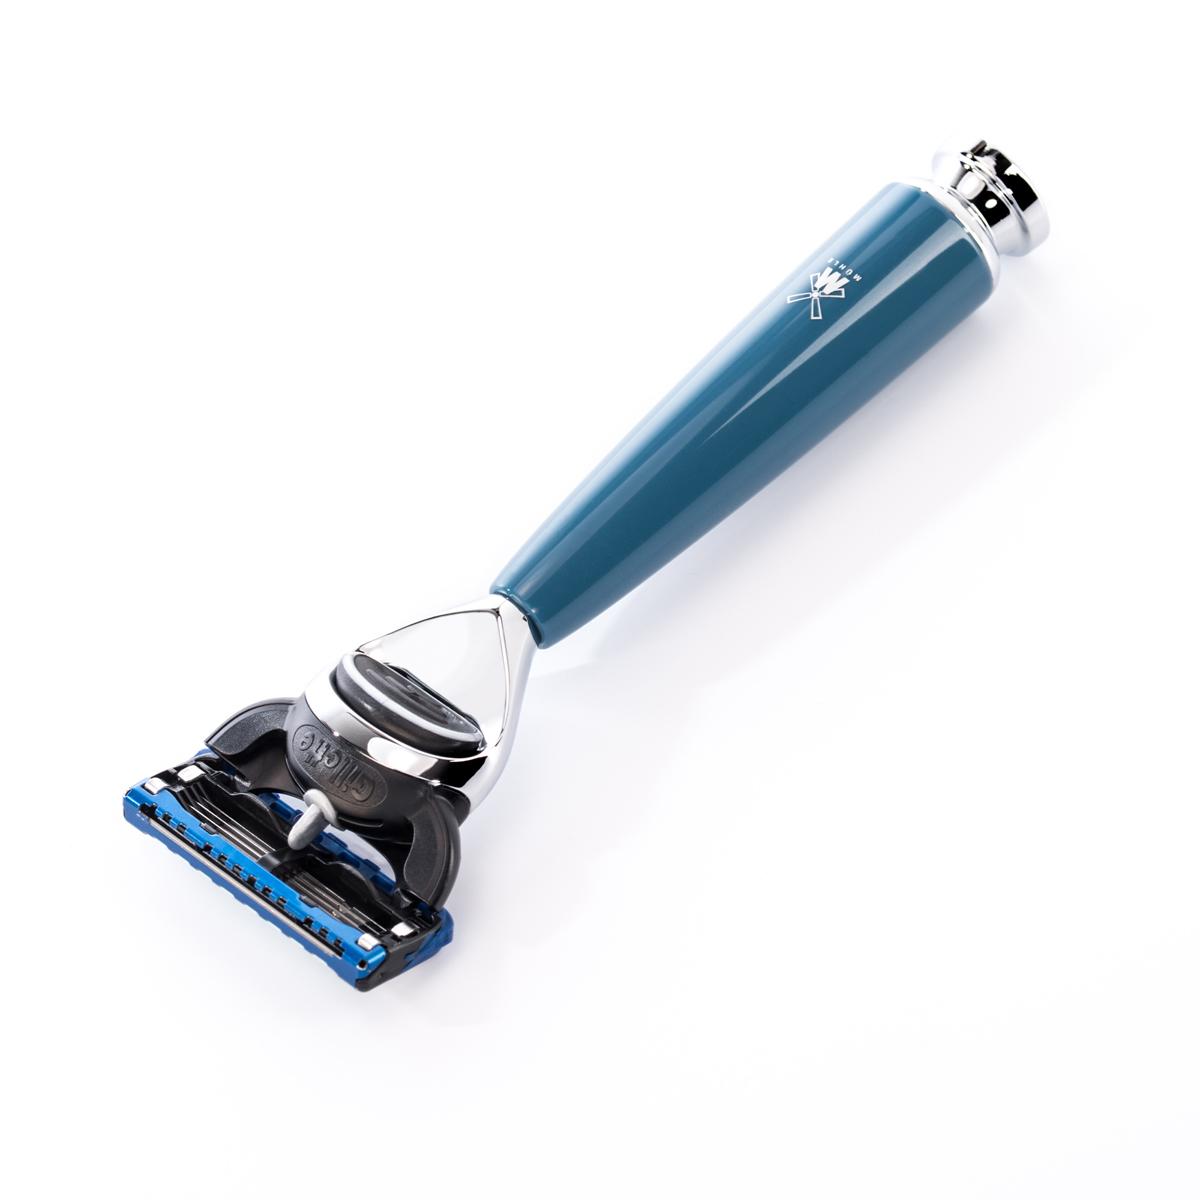 Maquinilla de afeitar Mühle rytmo fusión azul petróleo